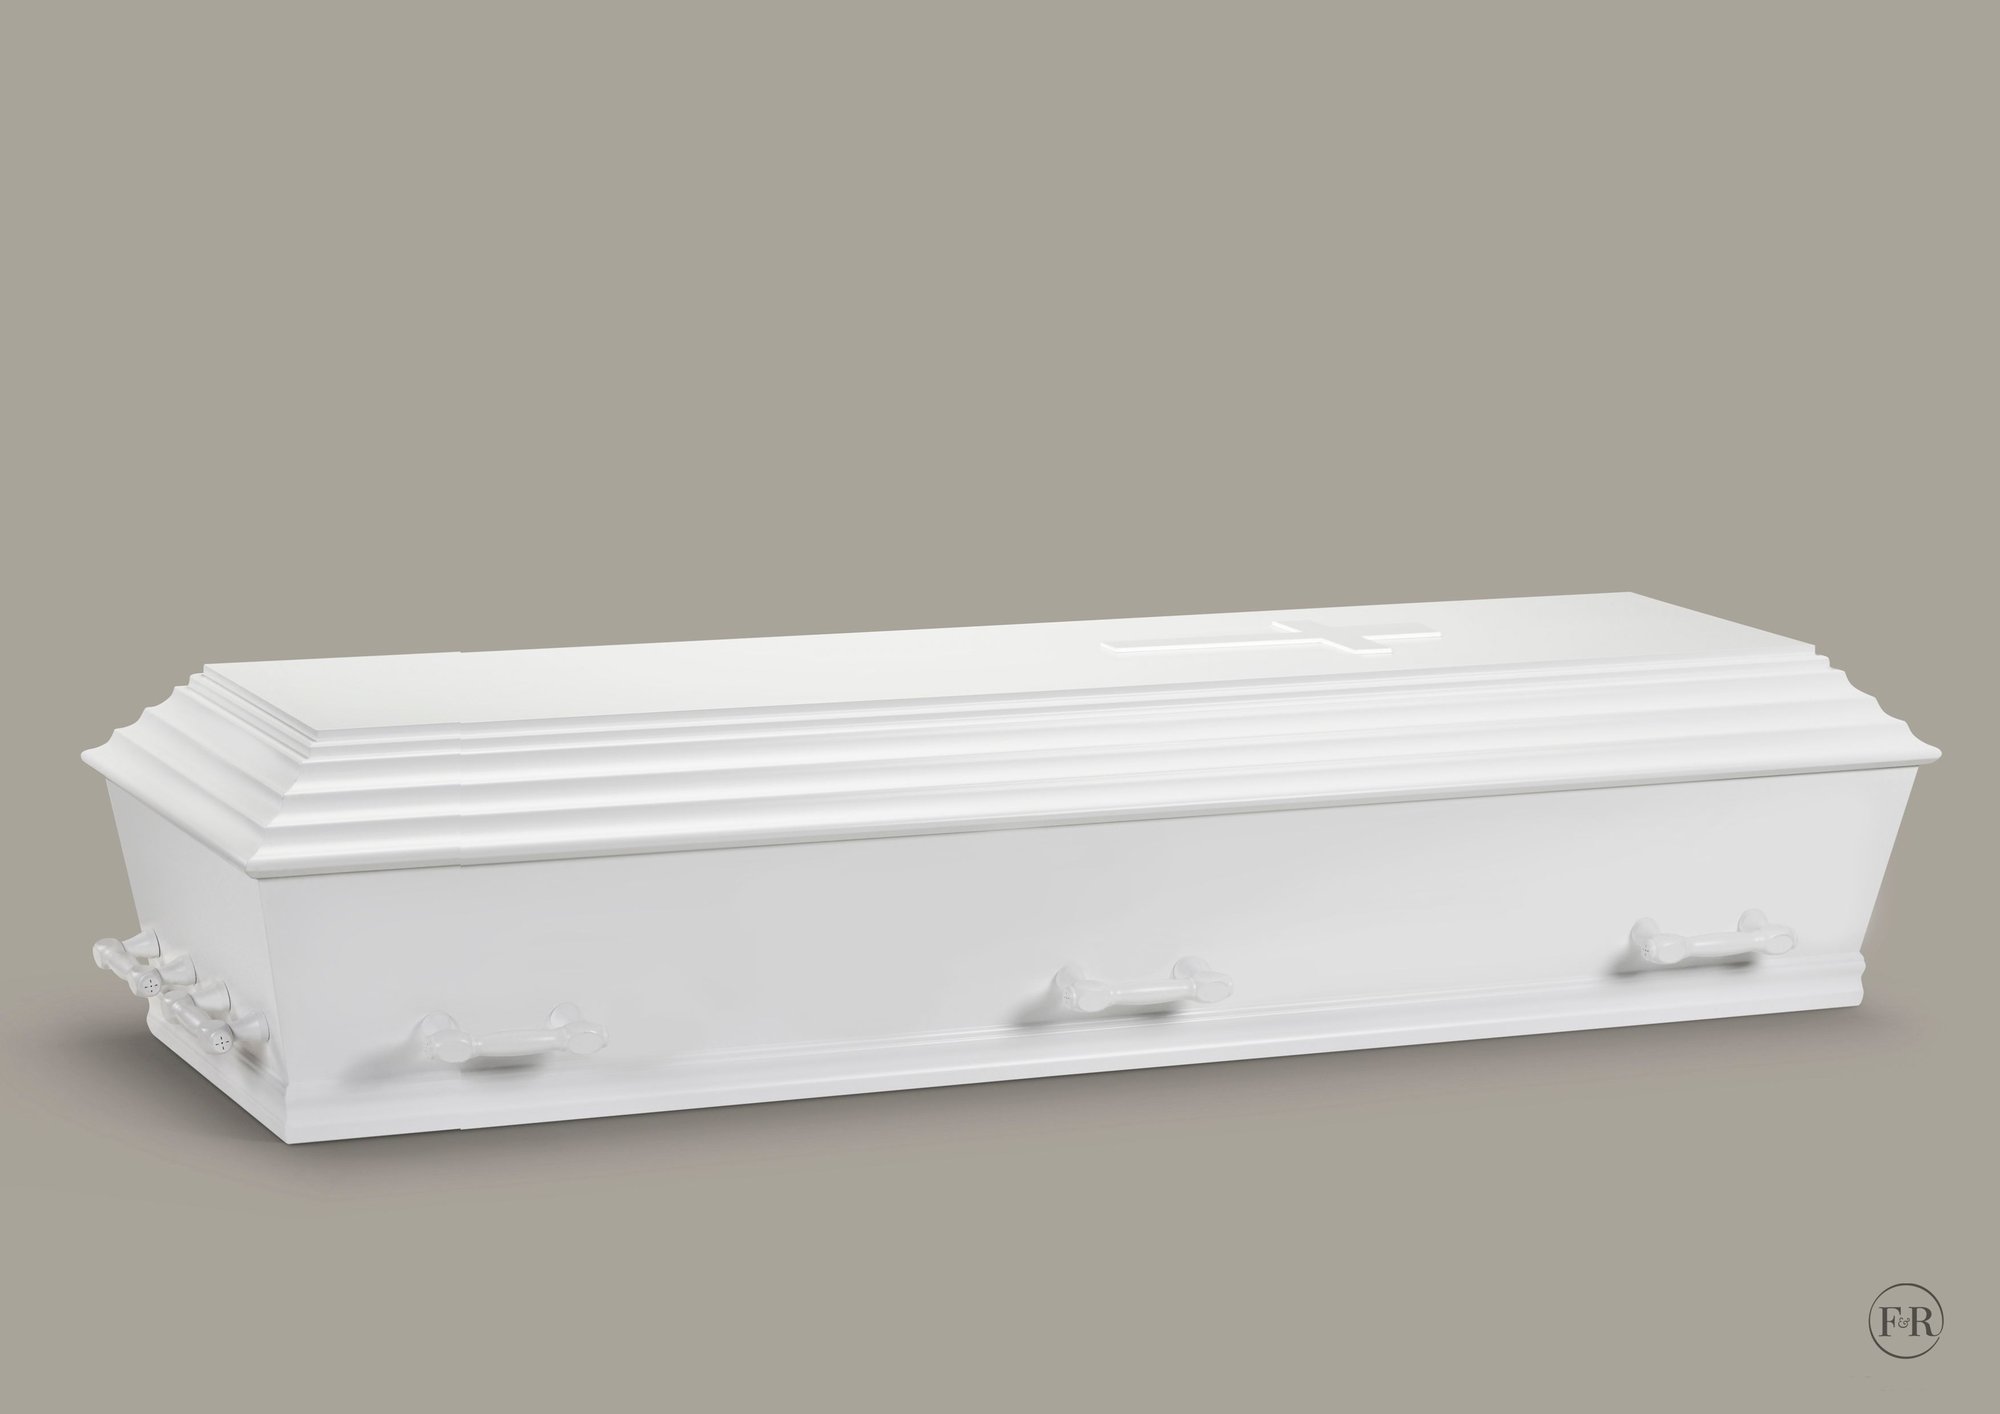 Bedemand og begravelsesforretning – kiste inkl. polstring, pude og dyne